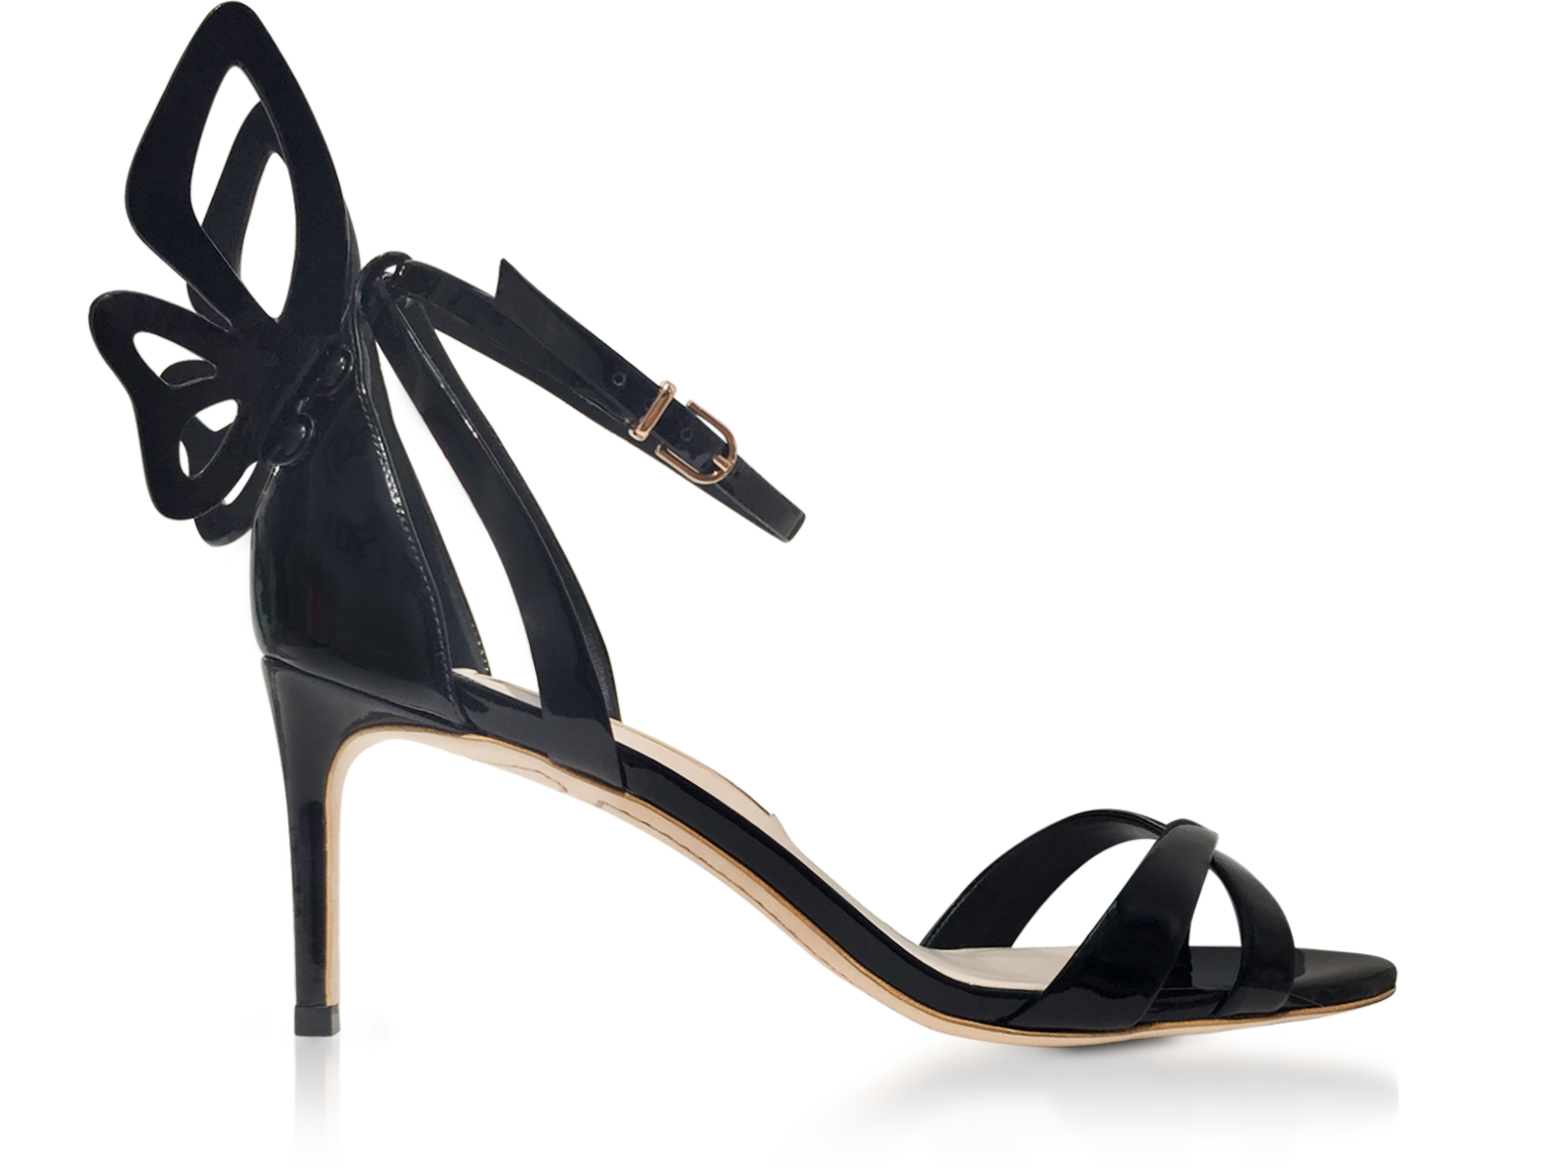 sophia webster heels black